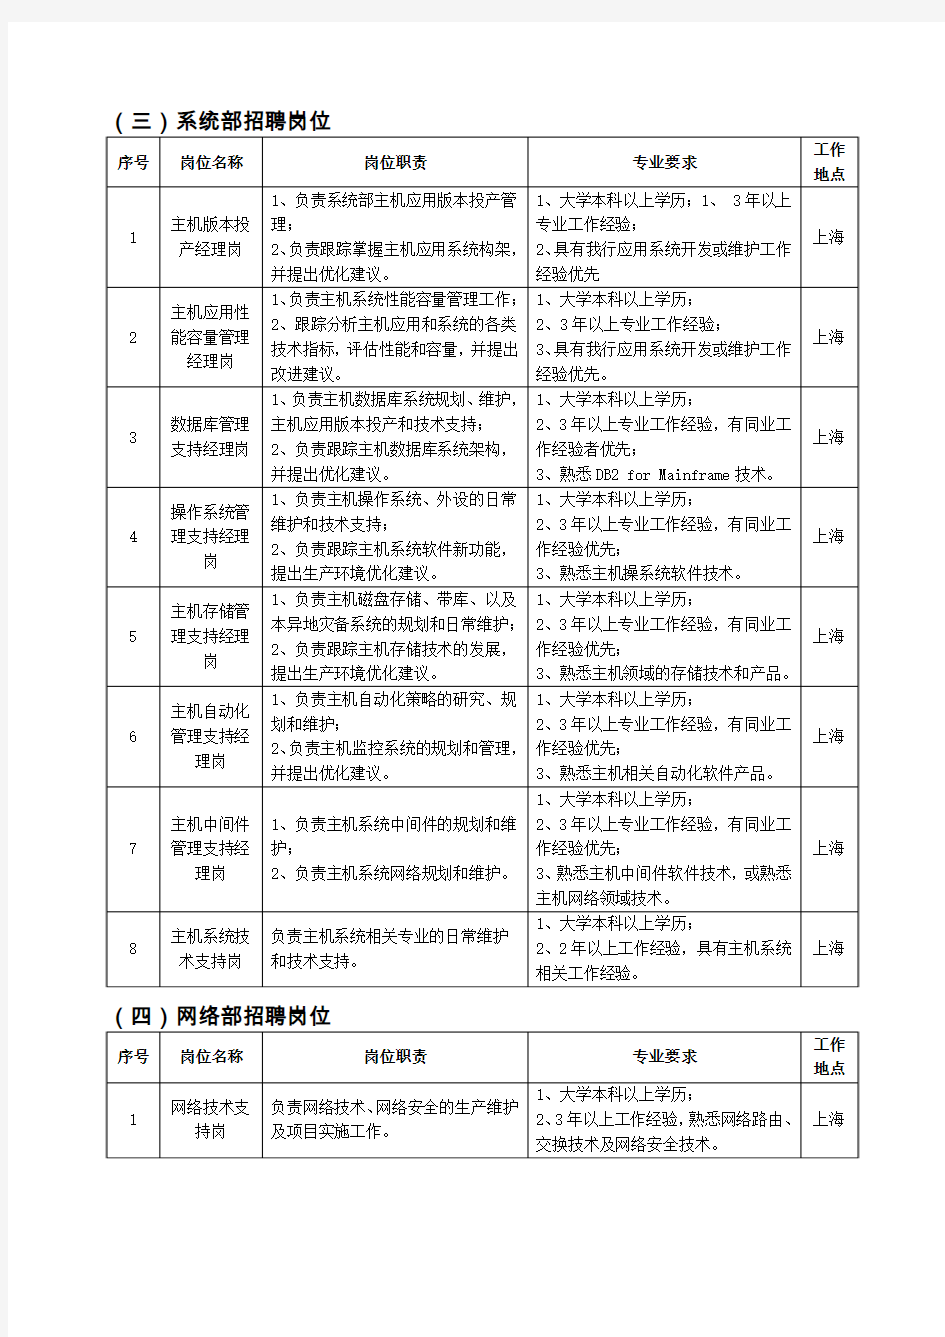 中国工商银行数据中心(上海)社会招聘岗位及要求